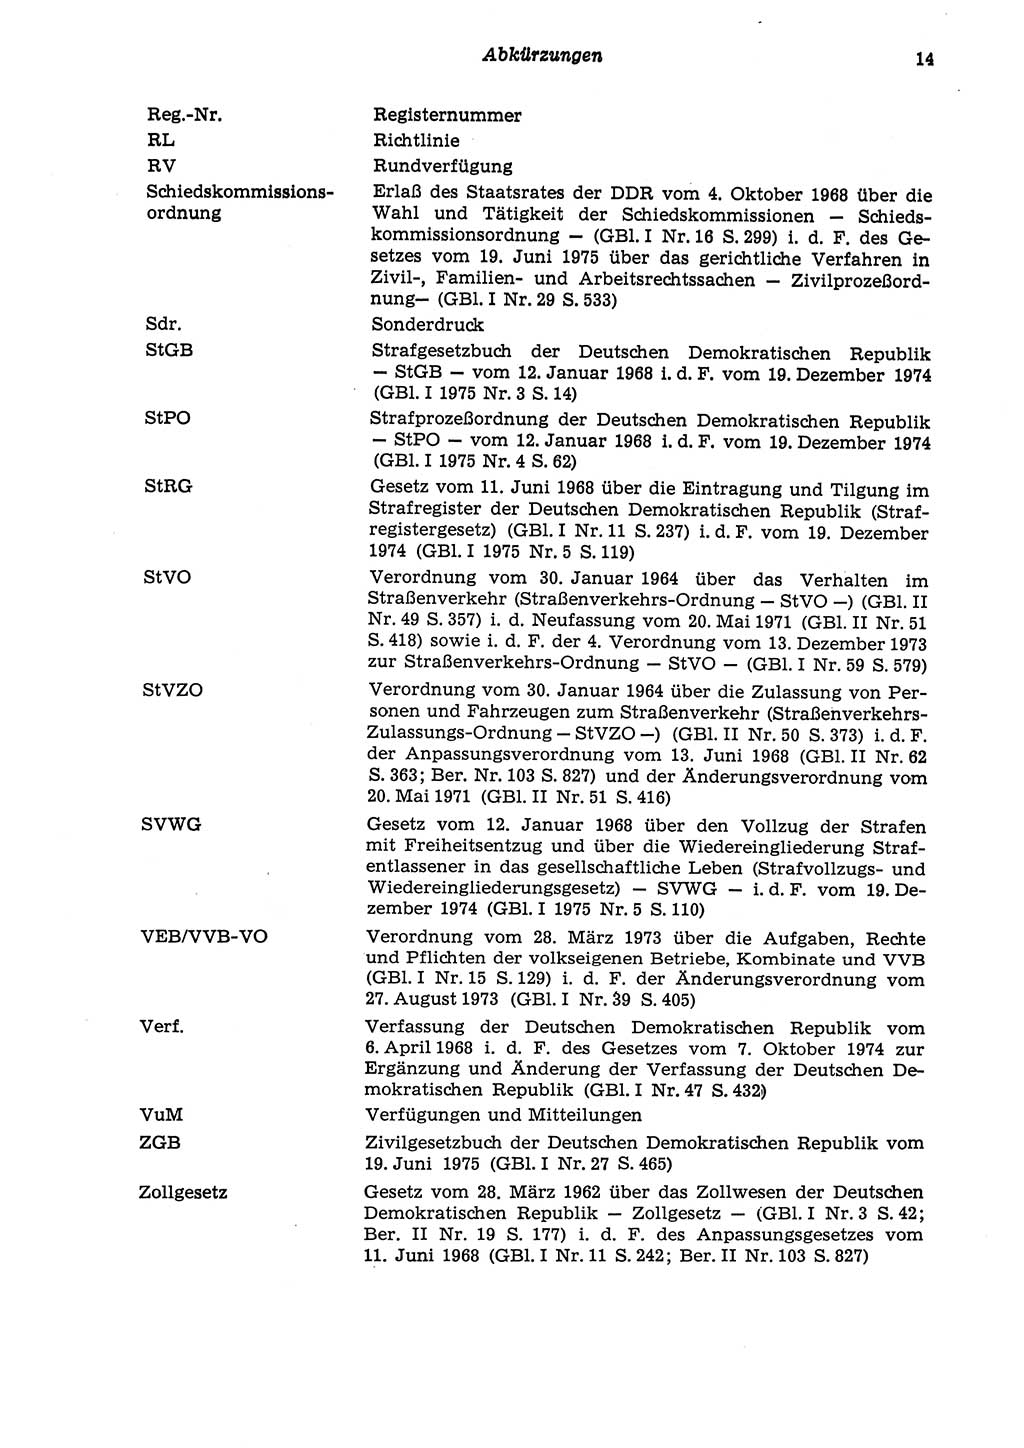 Strafgesetzbuch (StGB) der Deutschen Demokratischen Republik (DDR) und angrenzende Gesetze und Bestimmungen 1975, Seite 14 (StGB DDR Ges. Best. 1975, S. 14)